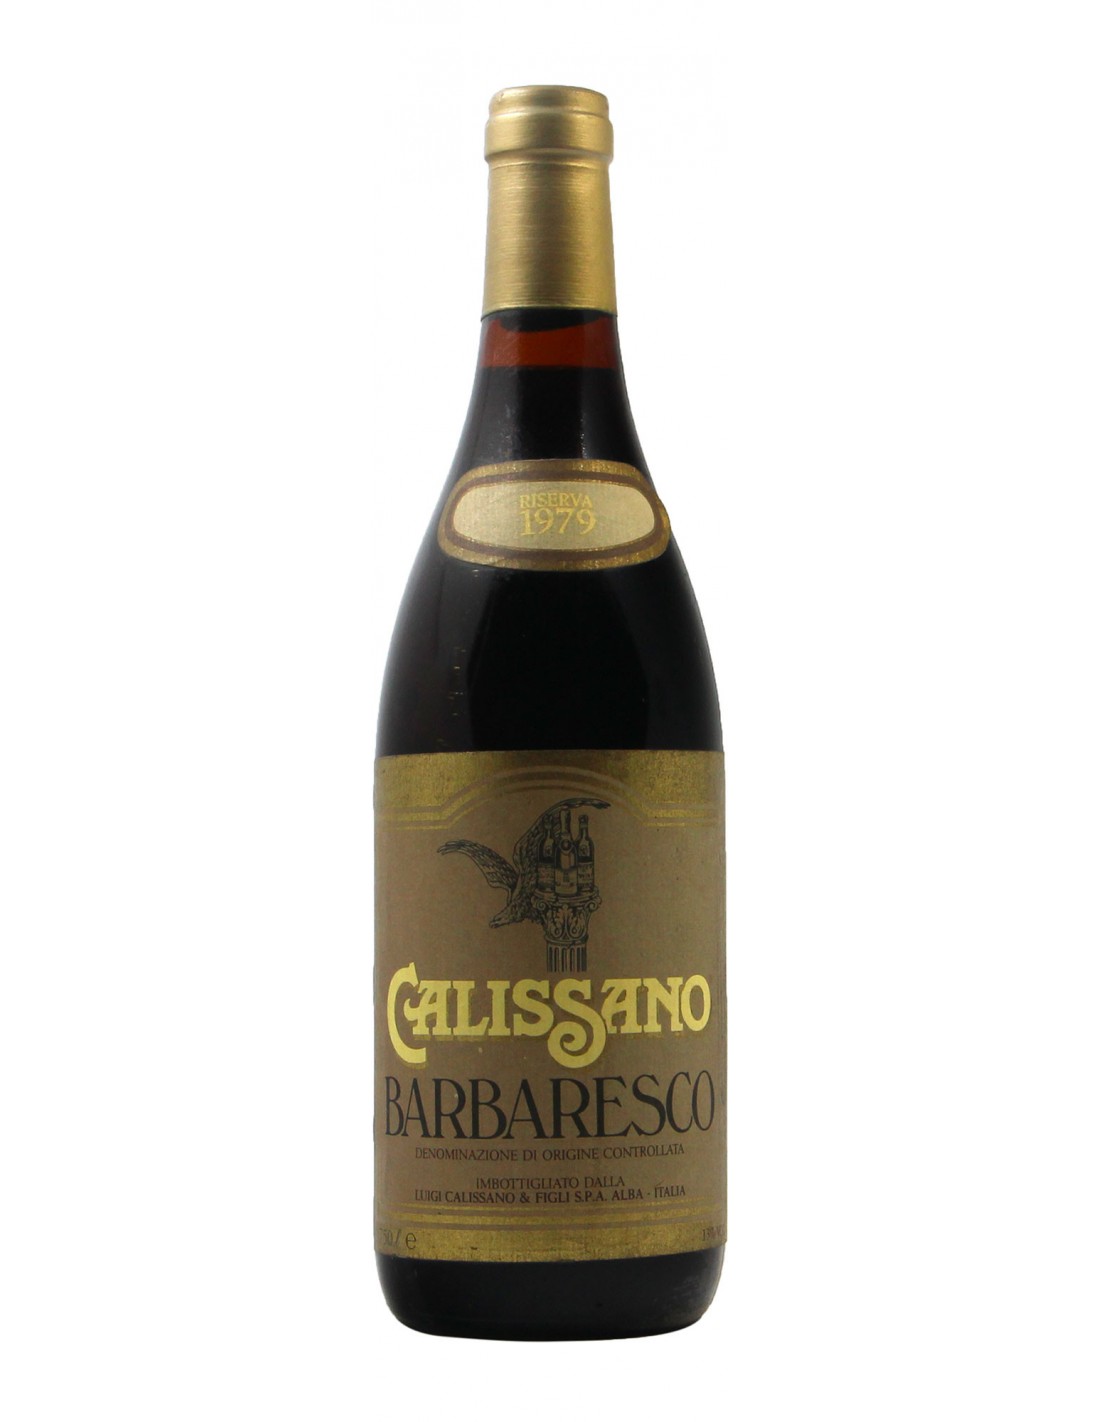 BARBARESCO RISERVA 1979 CALISSANO Grandi Bottiglie